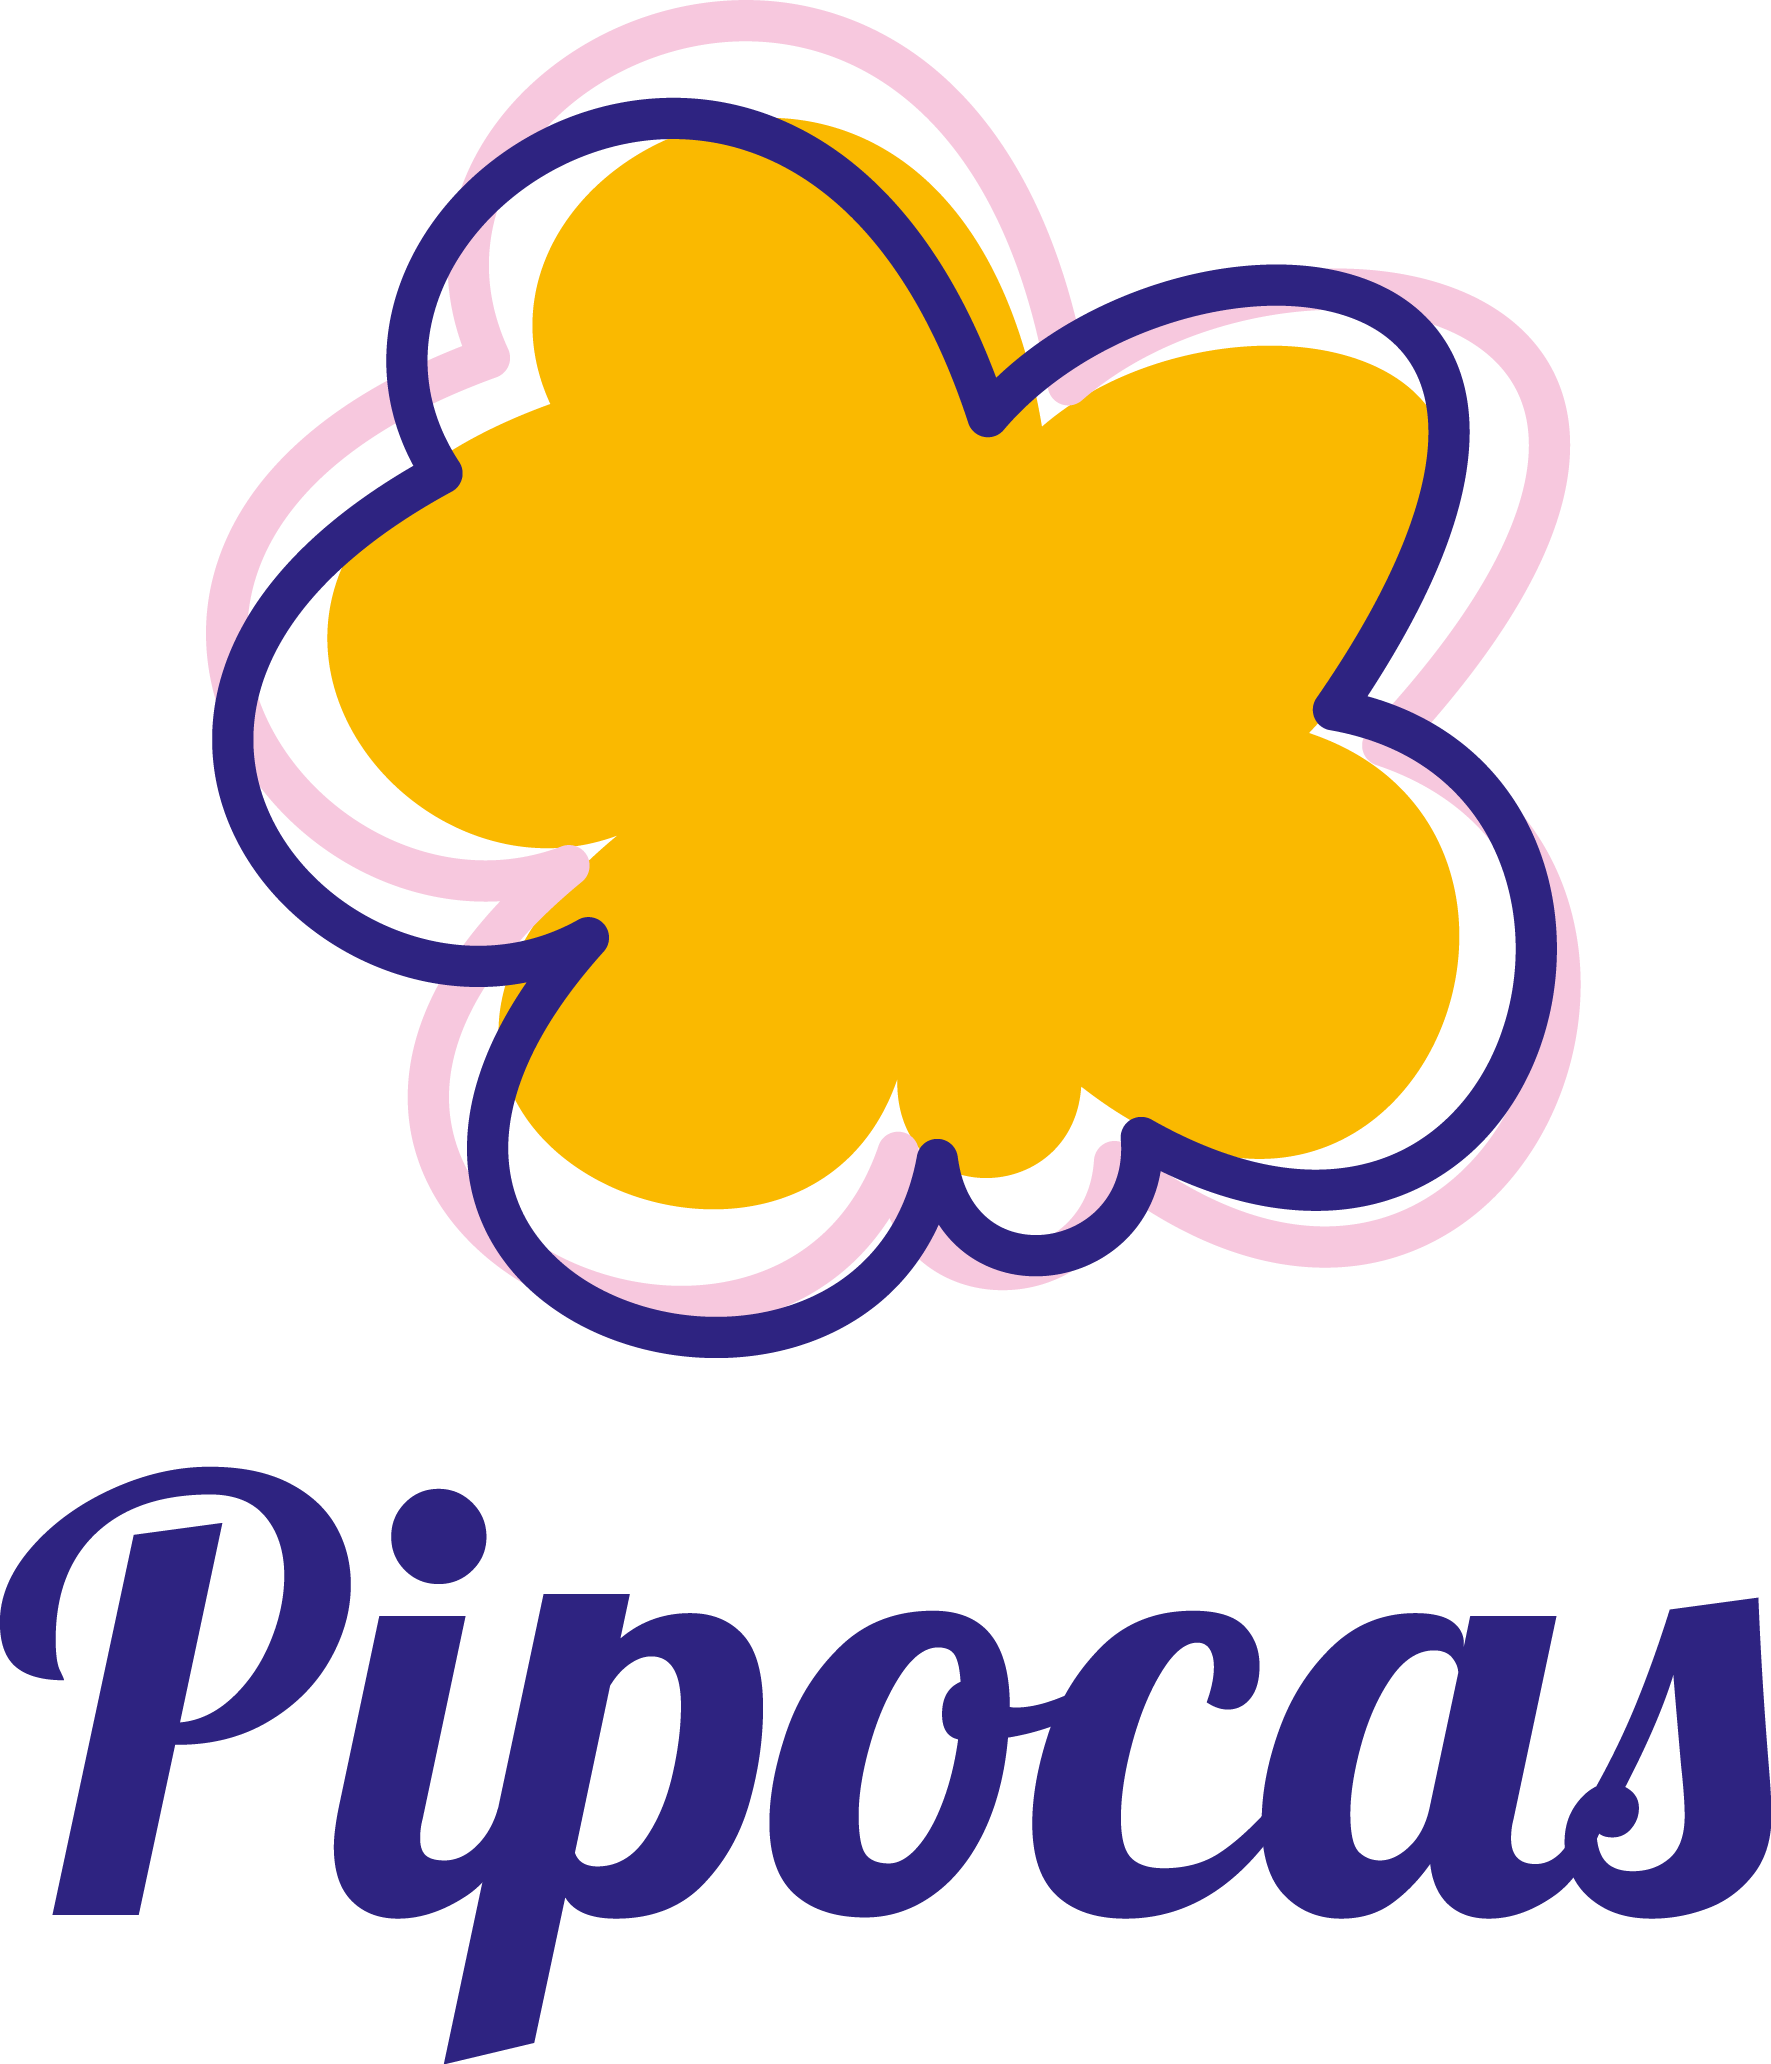 Pipocas